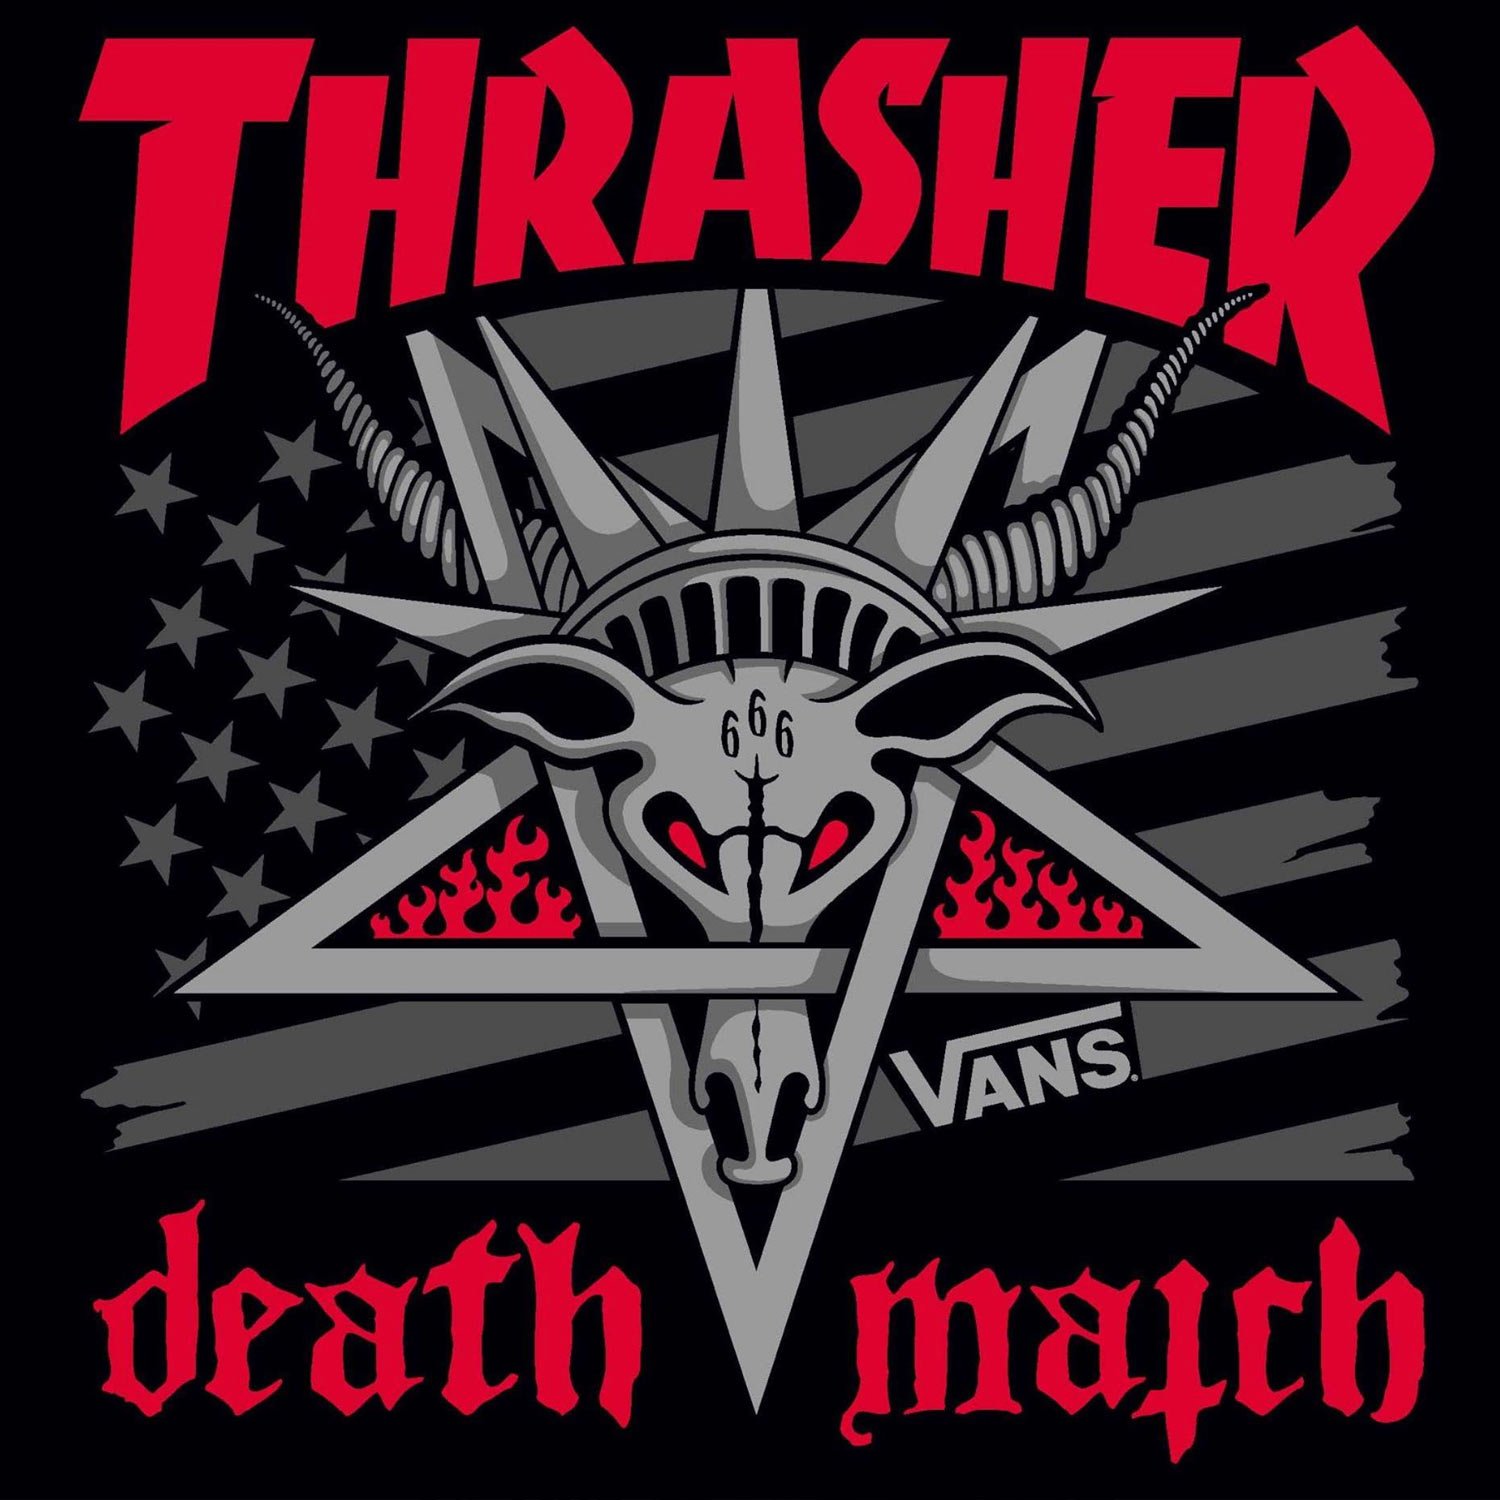 טוויטר \ Thrasher Magazine בטוויטר: "Thrasher Magazine x Vans present Death Match at The Knockdown Center in Queens on October 5-6, 2019. Free, All ages, First come, First served. RSVP now: